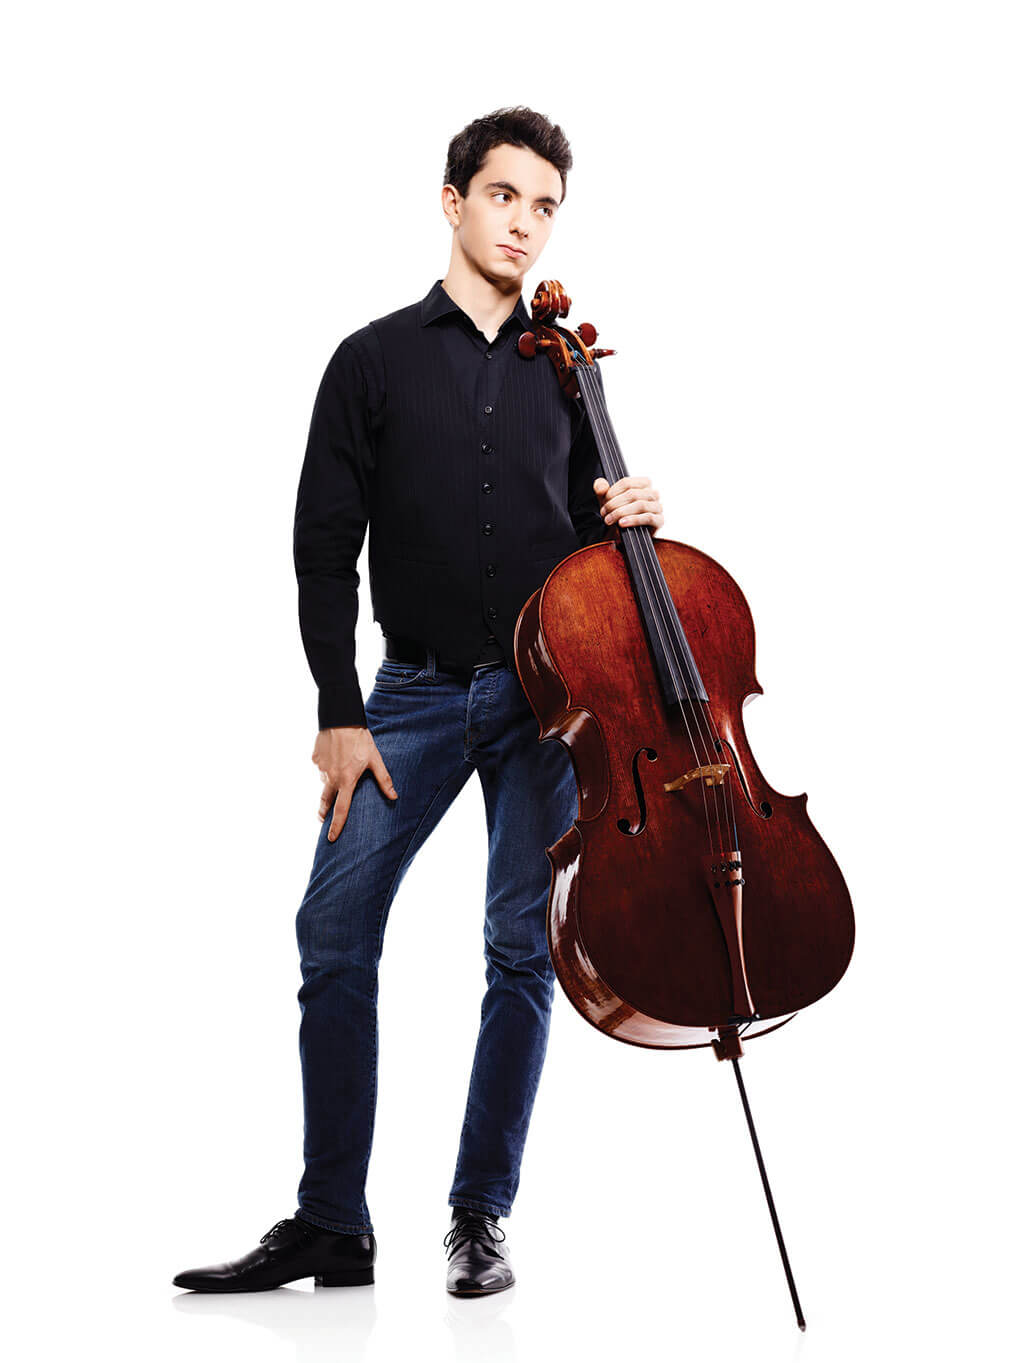 Stéphane Tétreault, violoncelliste canadien